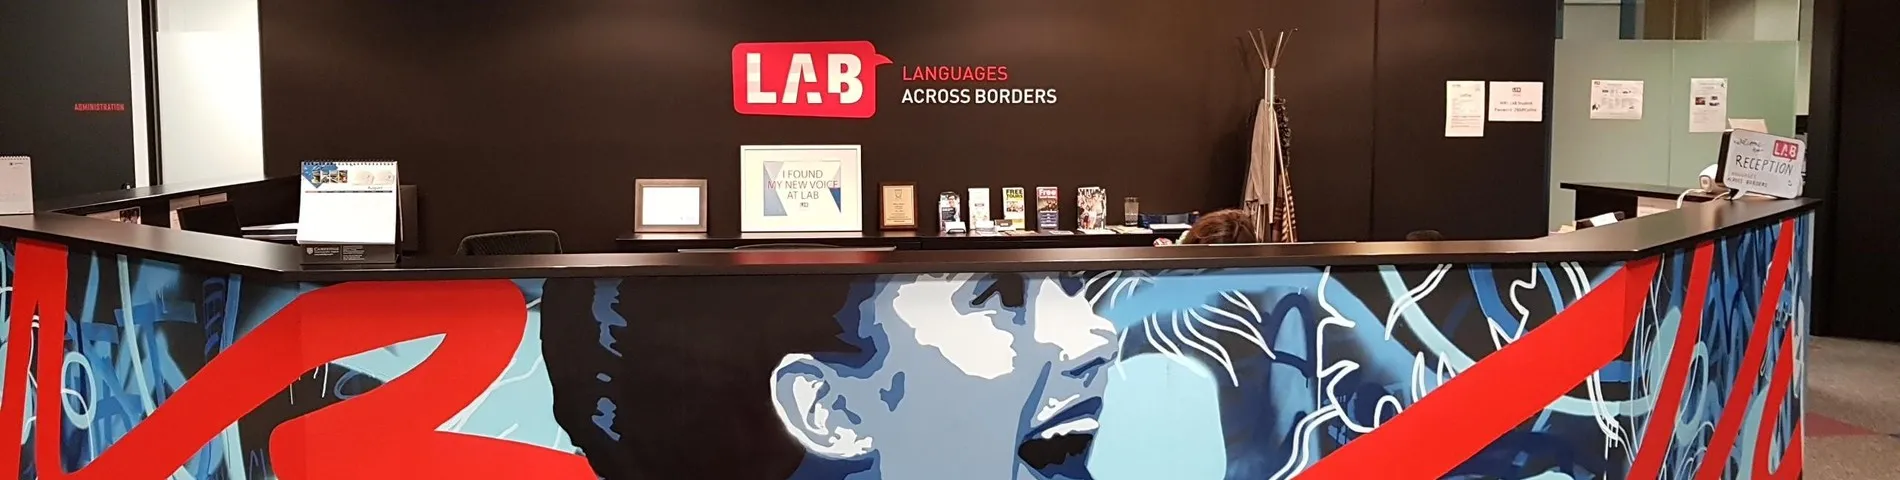 Obrázok školy LAB - Languages Across Borders – 1